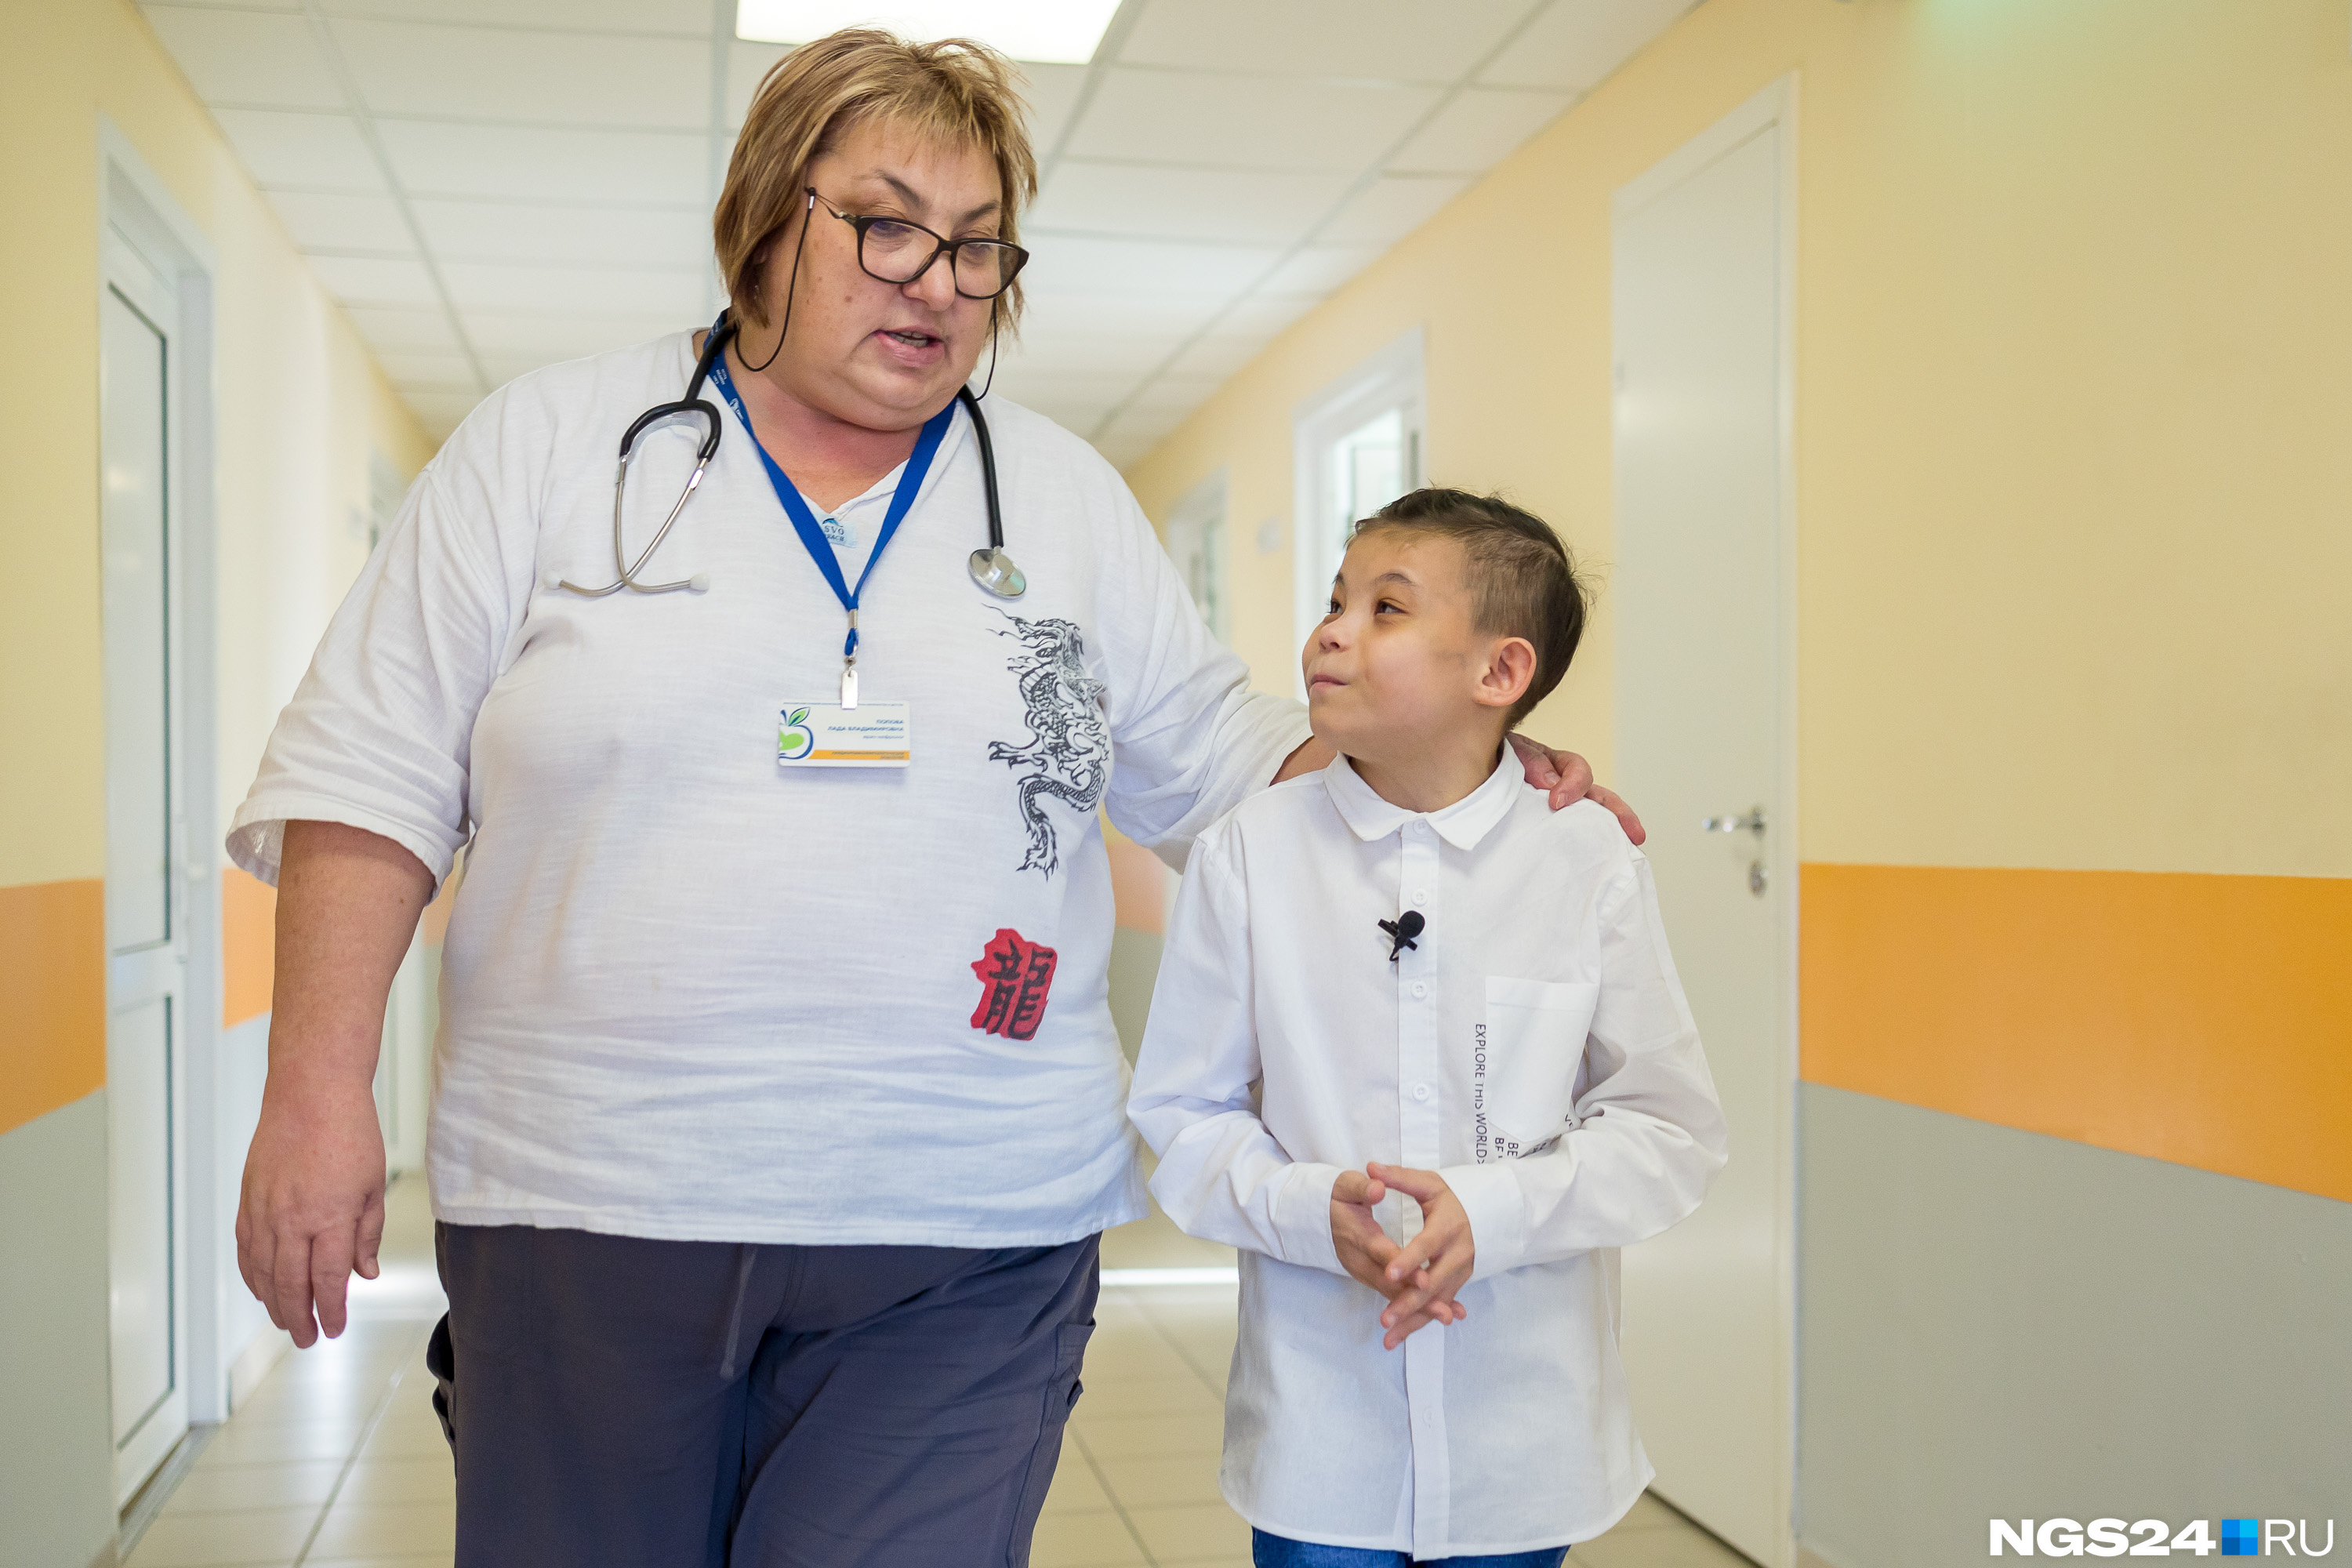 Лечащий врач Володи Лада Попова старается обсуждать с пациентом не только медицинские вопросы